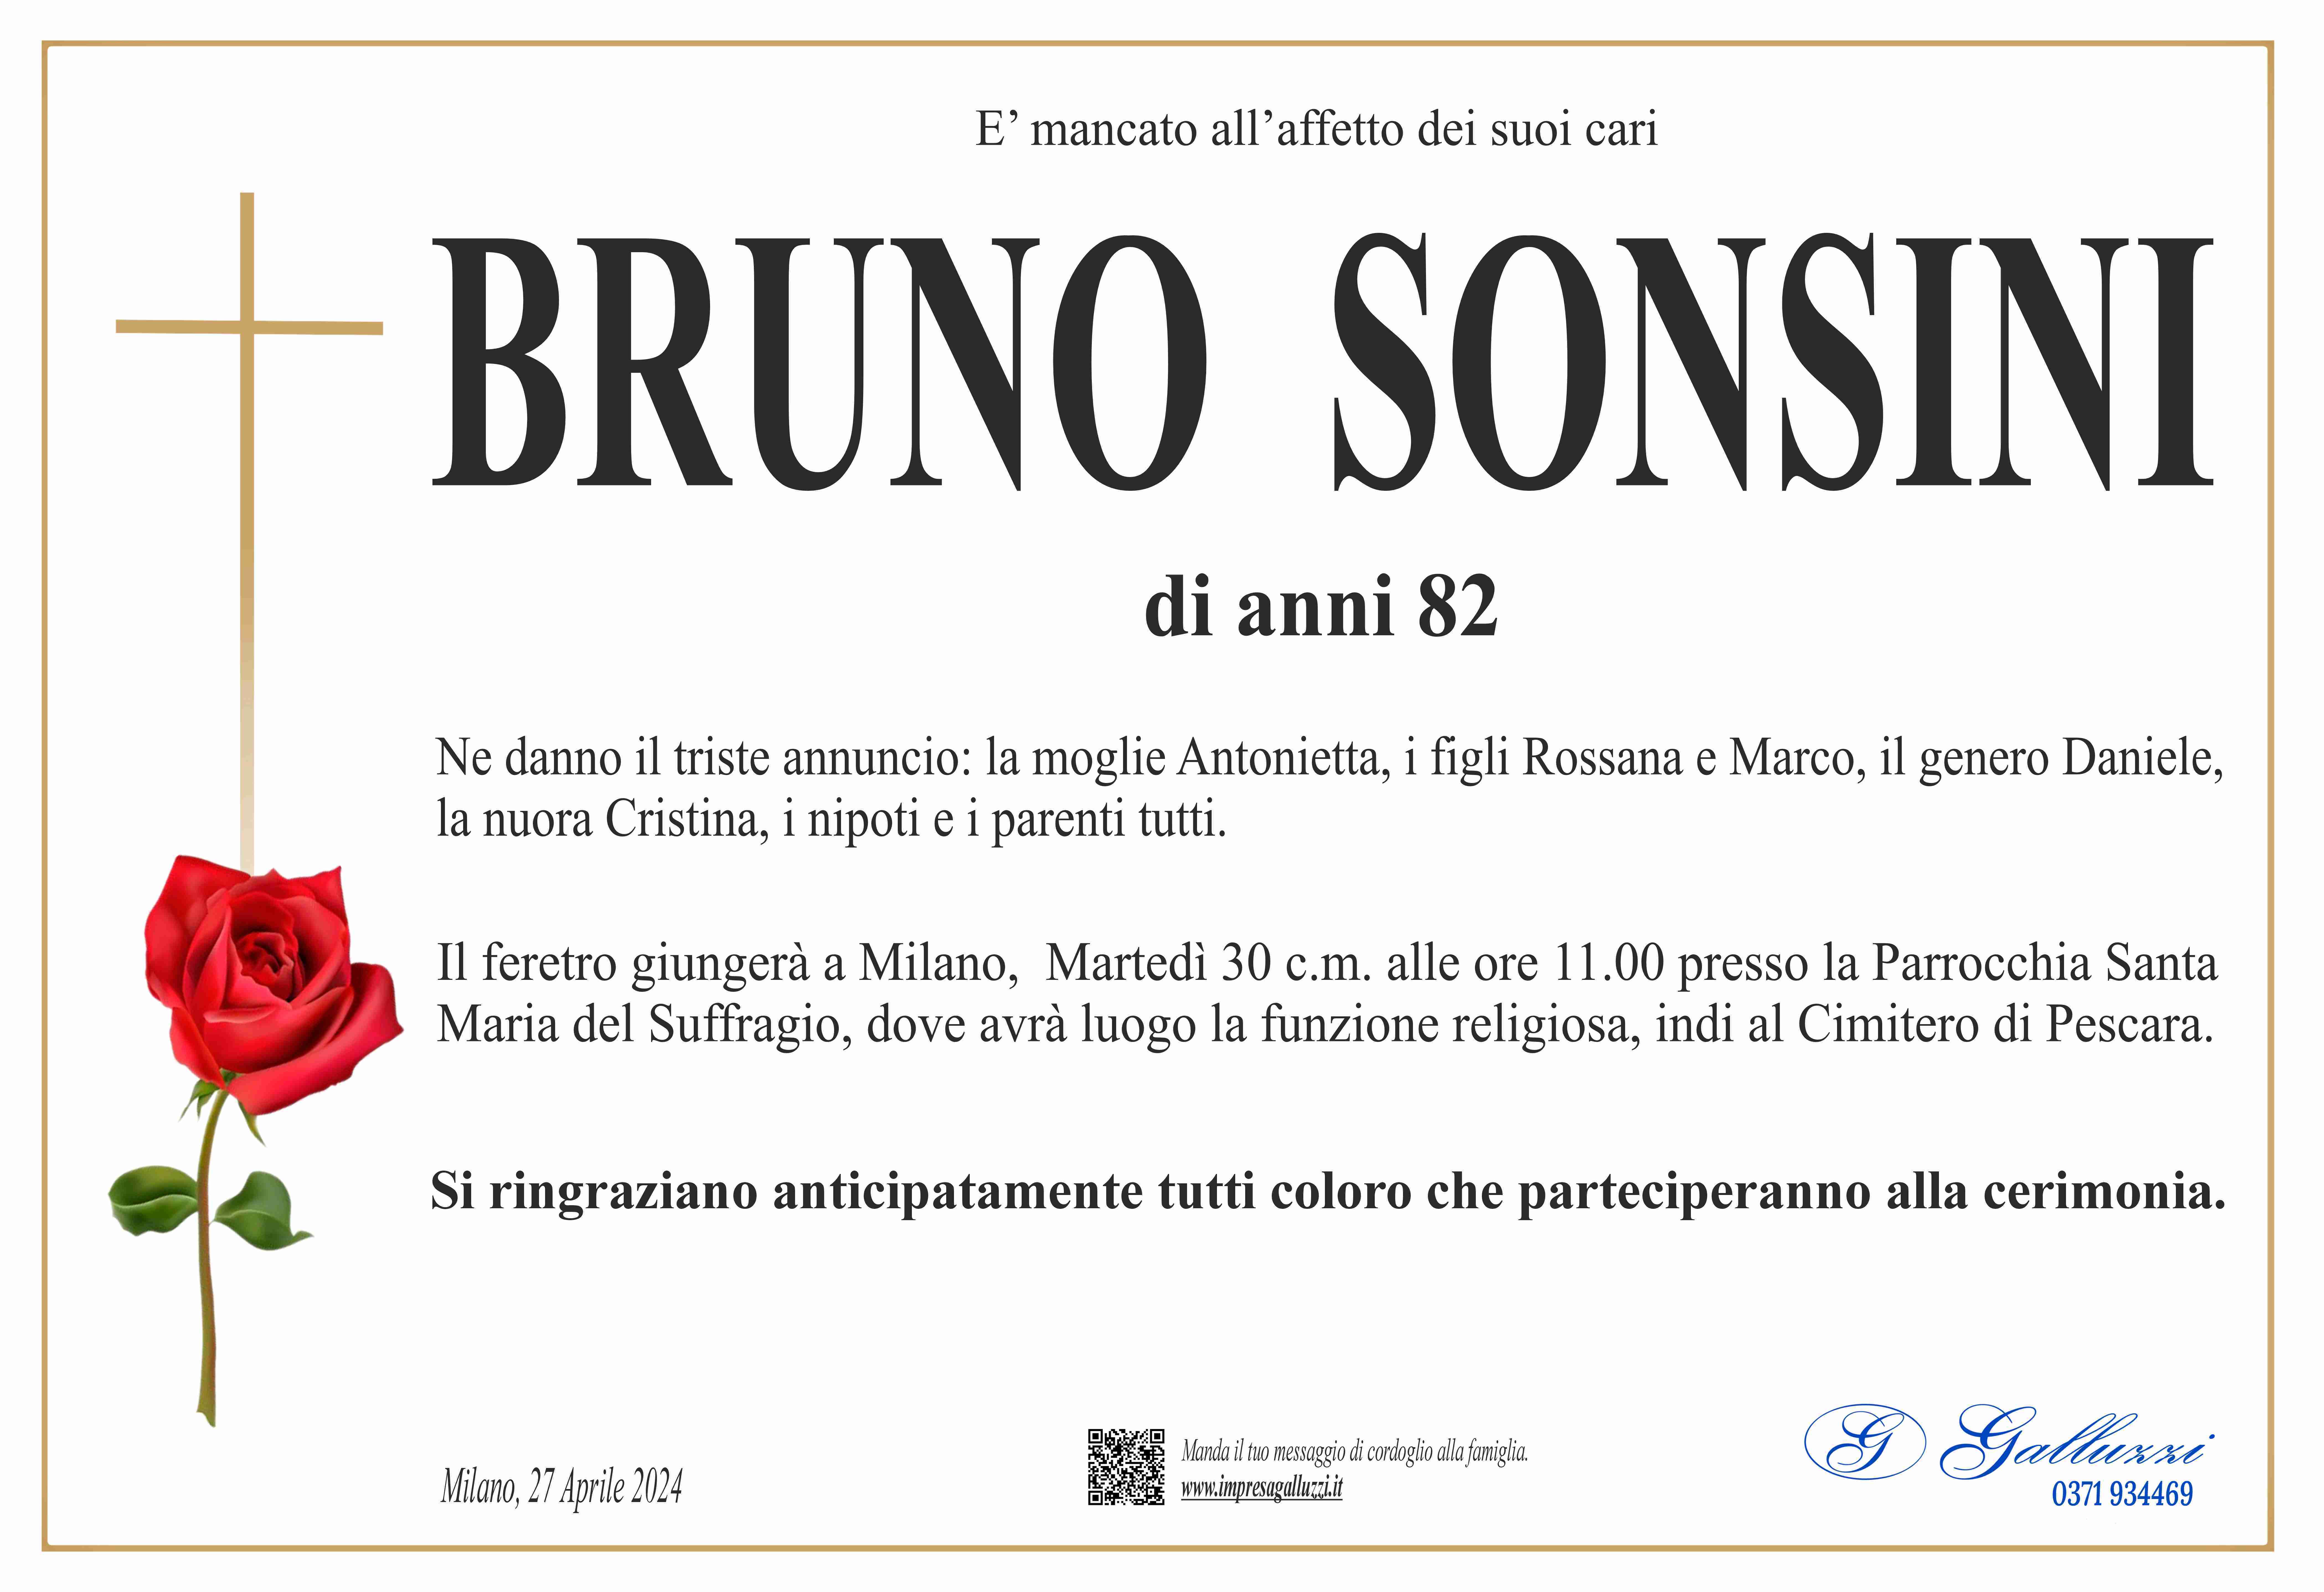 Bruno Sonsini